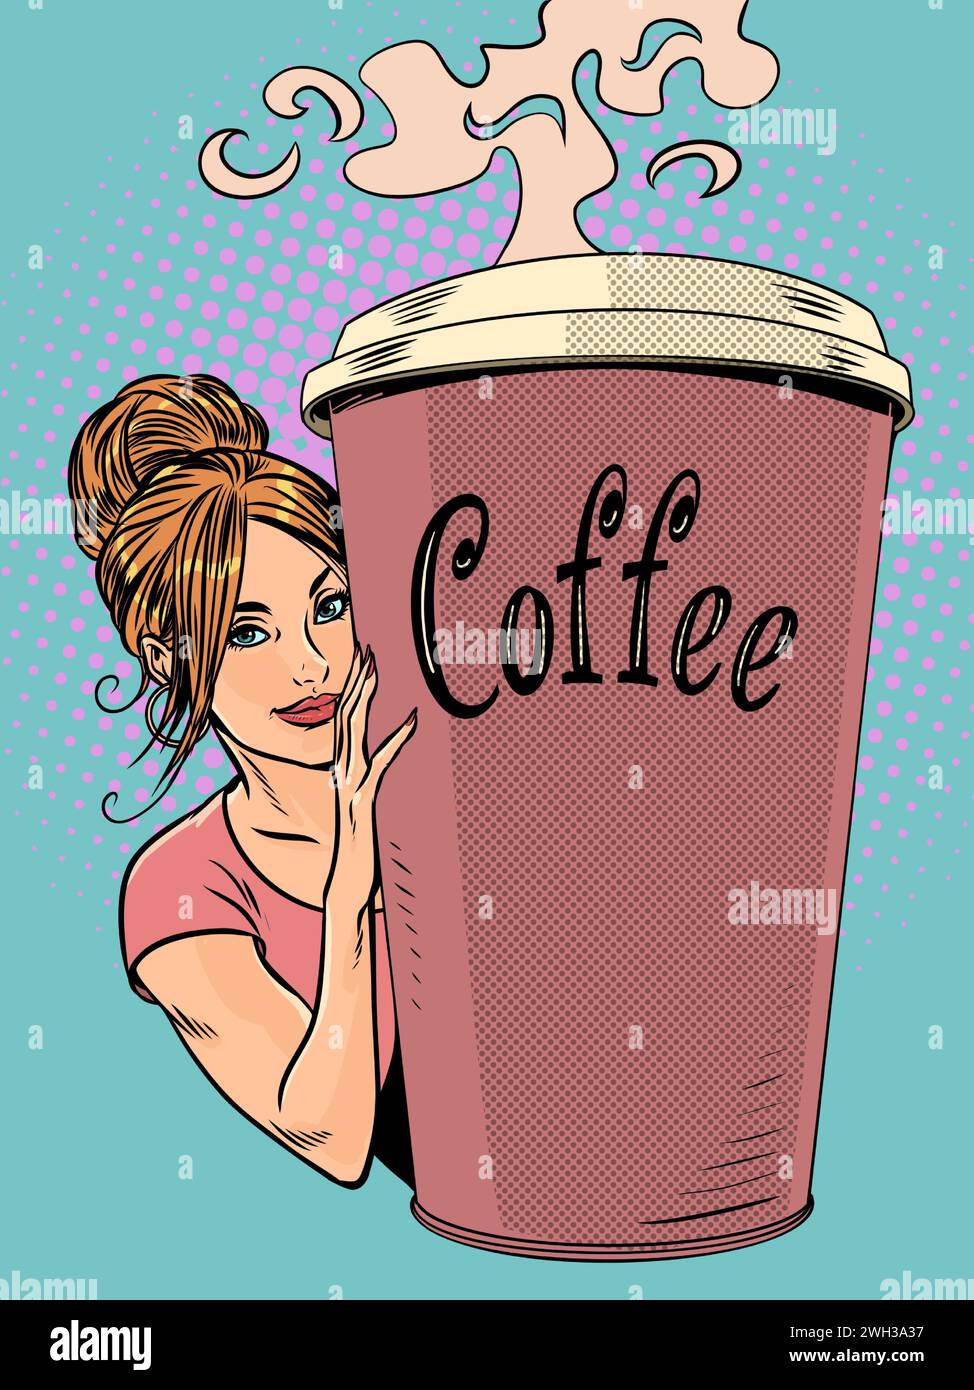 Saisonales günstiges Angebot aus einem Café. Das Mädchen sieht links von der Tasse Kaffee. Ein heißes Getränk zum Aufwärmen. Pop Art Retro Vektor Stock Vektor